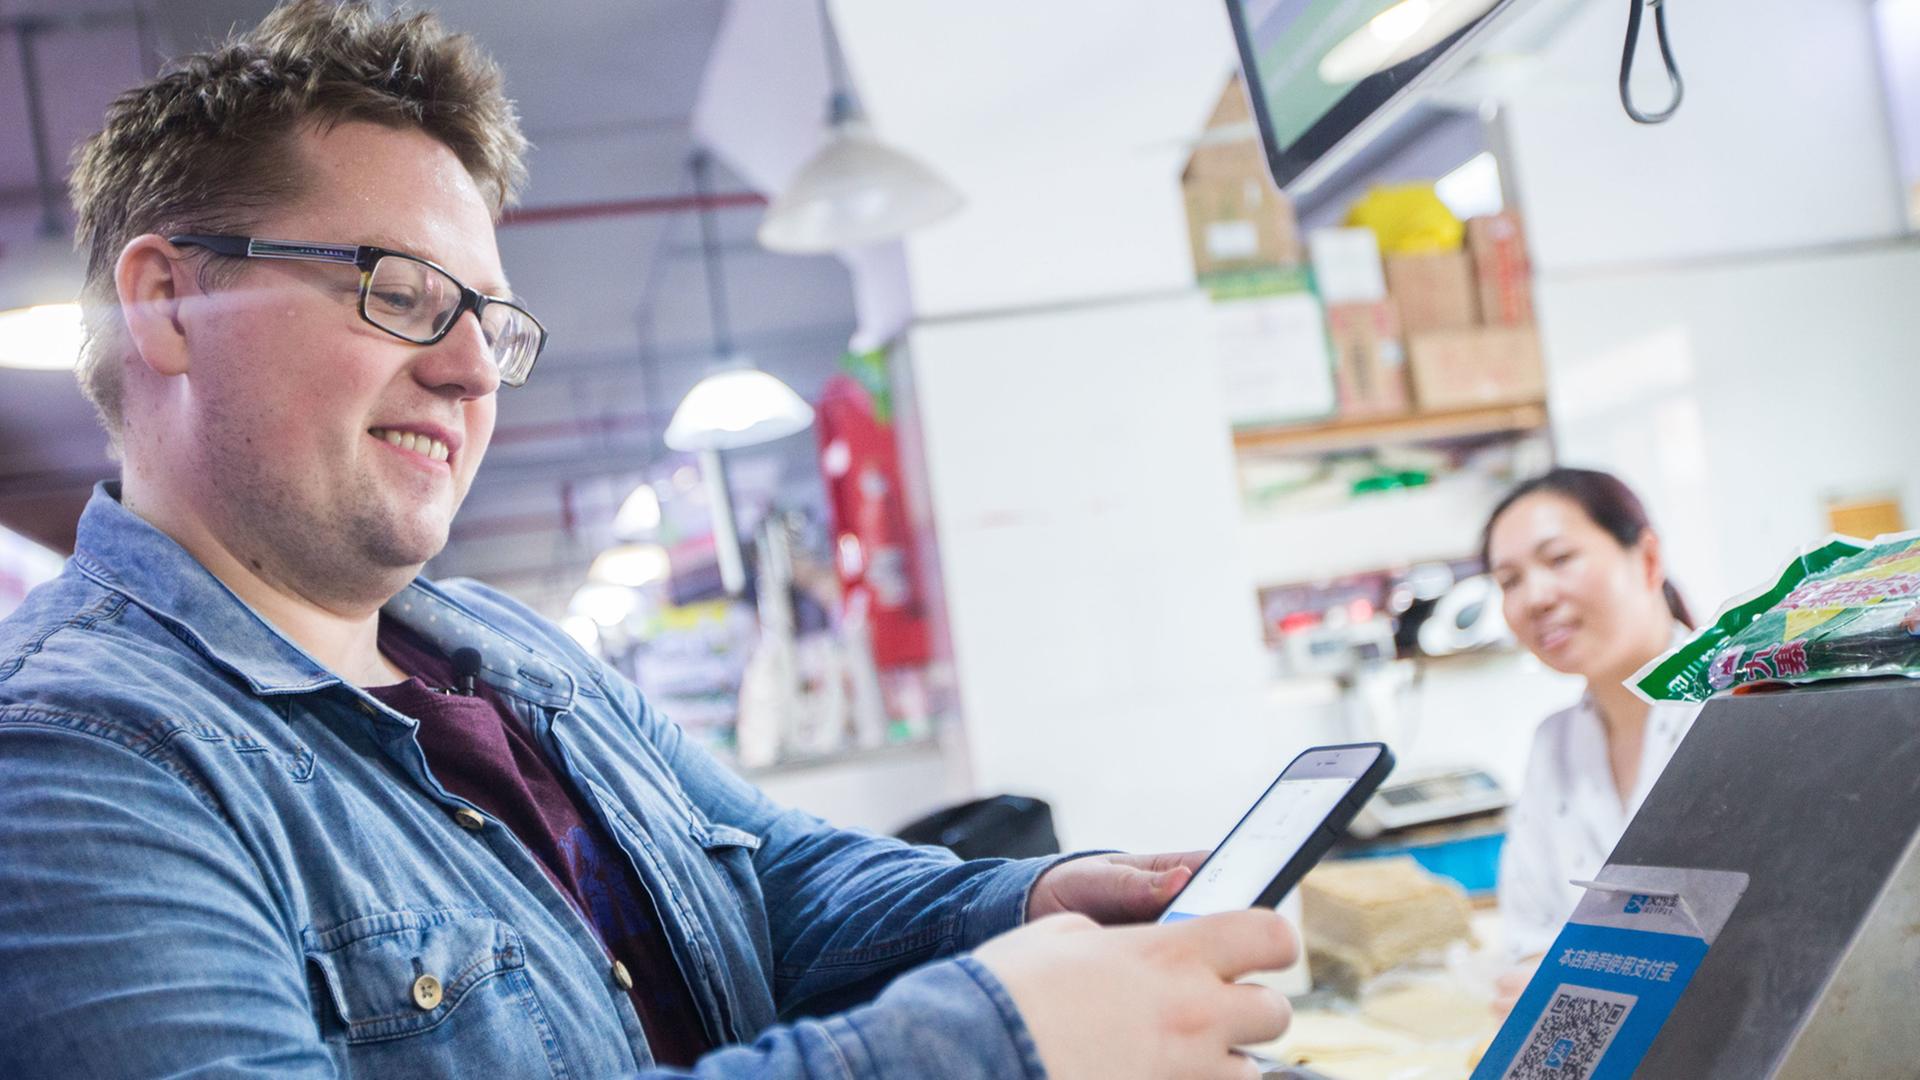 Das Bild zeigt einen jungen Mann mit Bürstenschnitt, Jeansjacke und Brille, der mit seinem Smartphone in einem Supermarkt in Shanghai einen QR Code scannt.